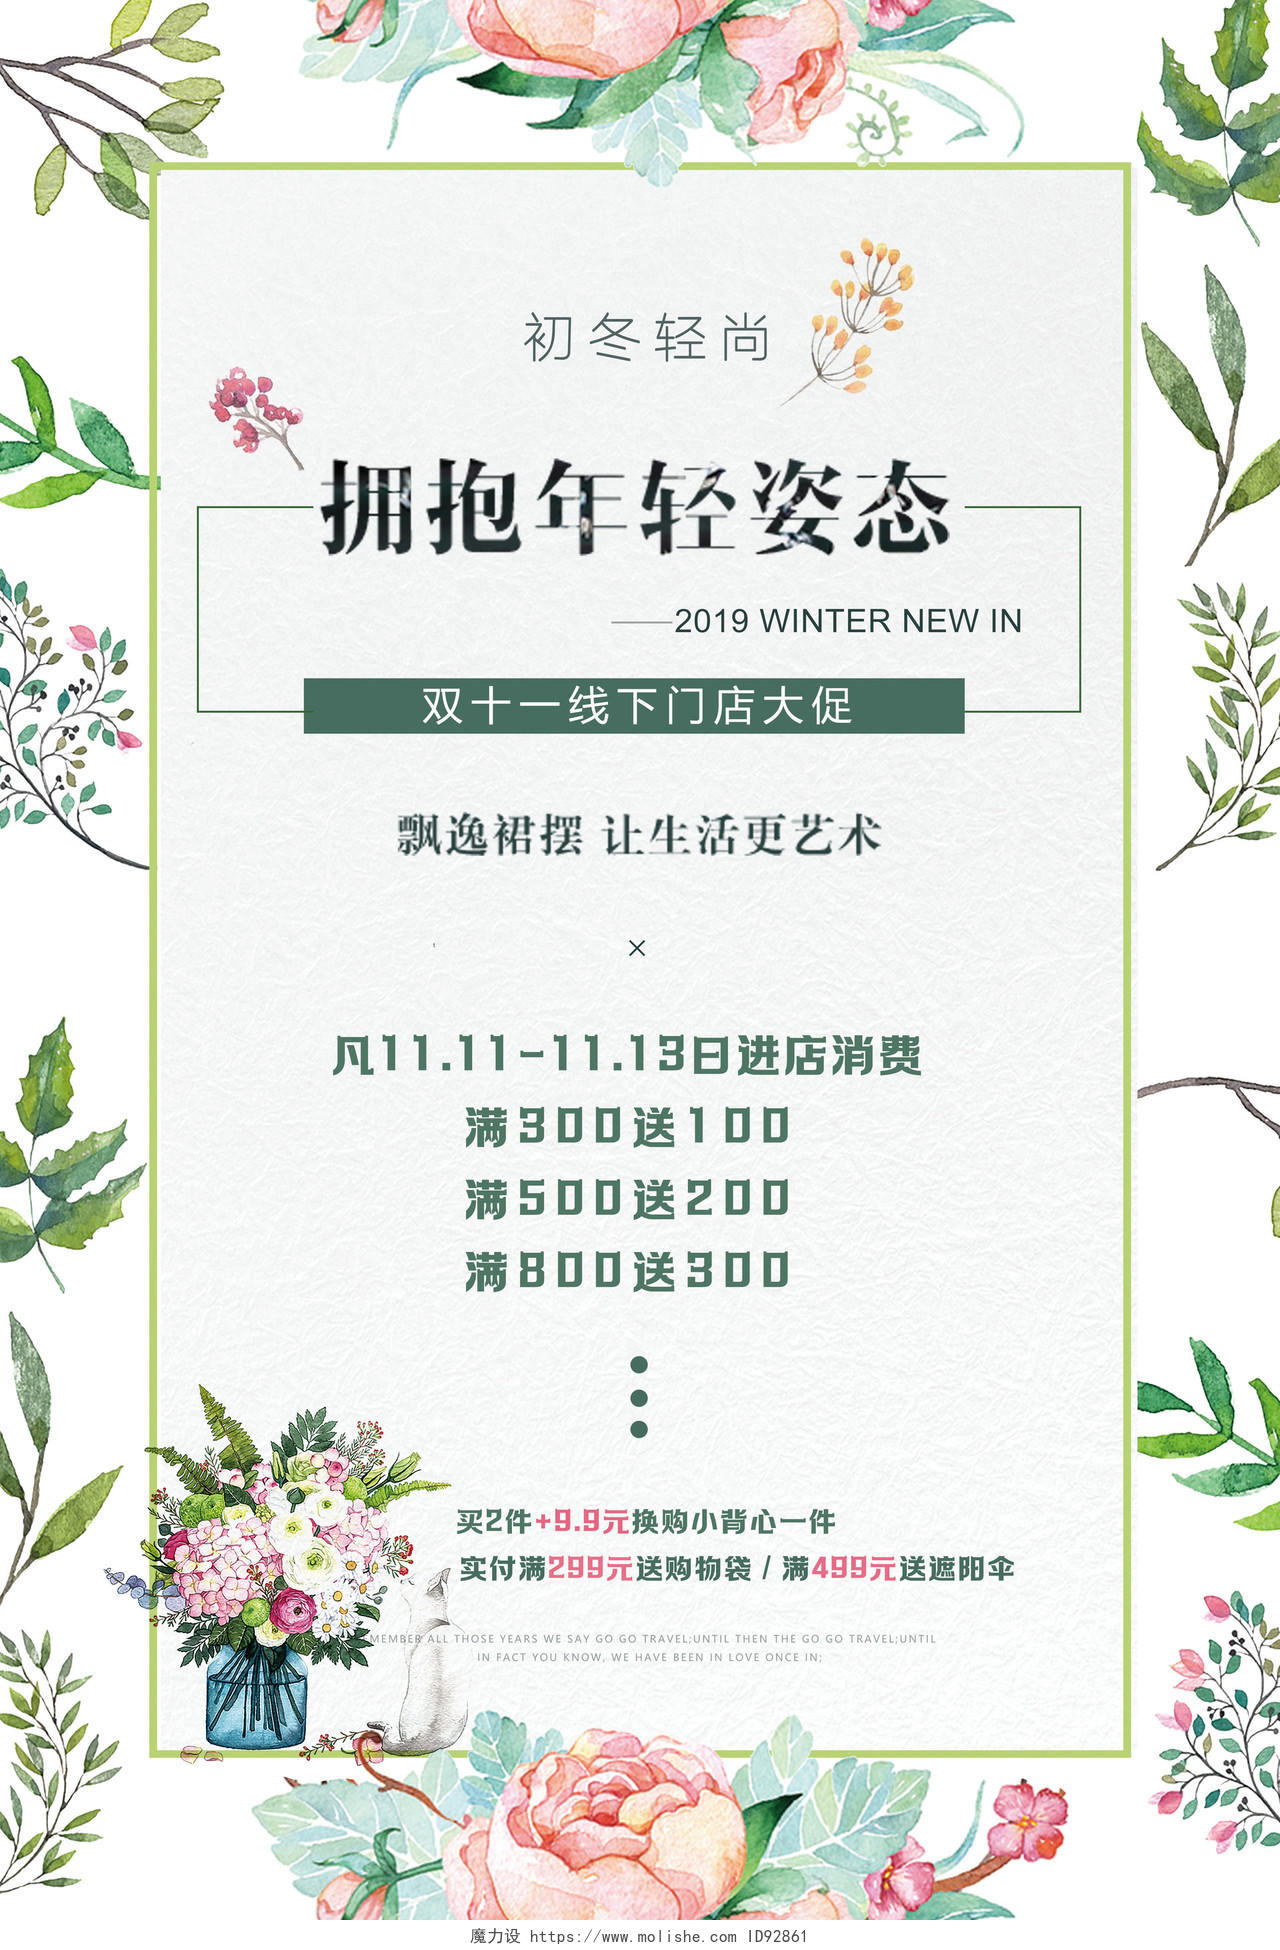 11小清新花卉女装服装店双十一线下门店实体店活动宣传海报